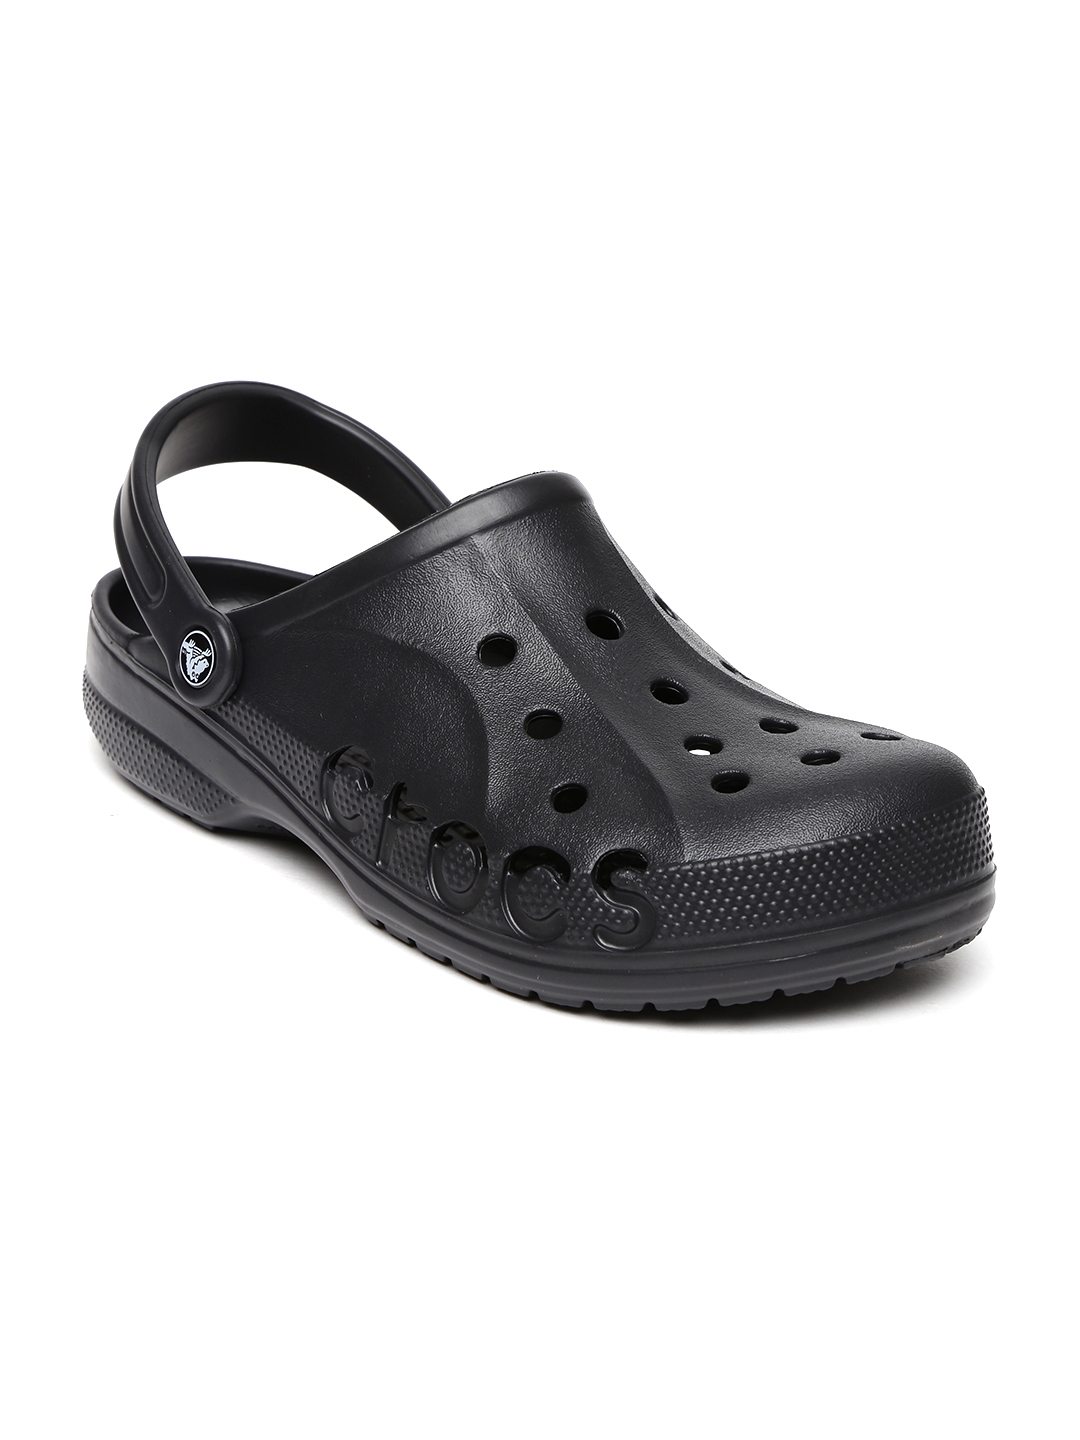 crocs baya black